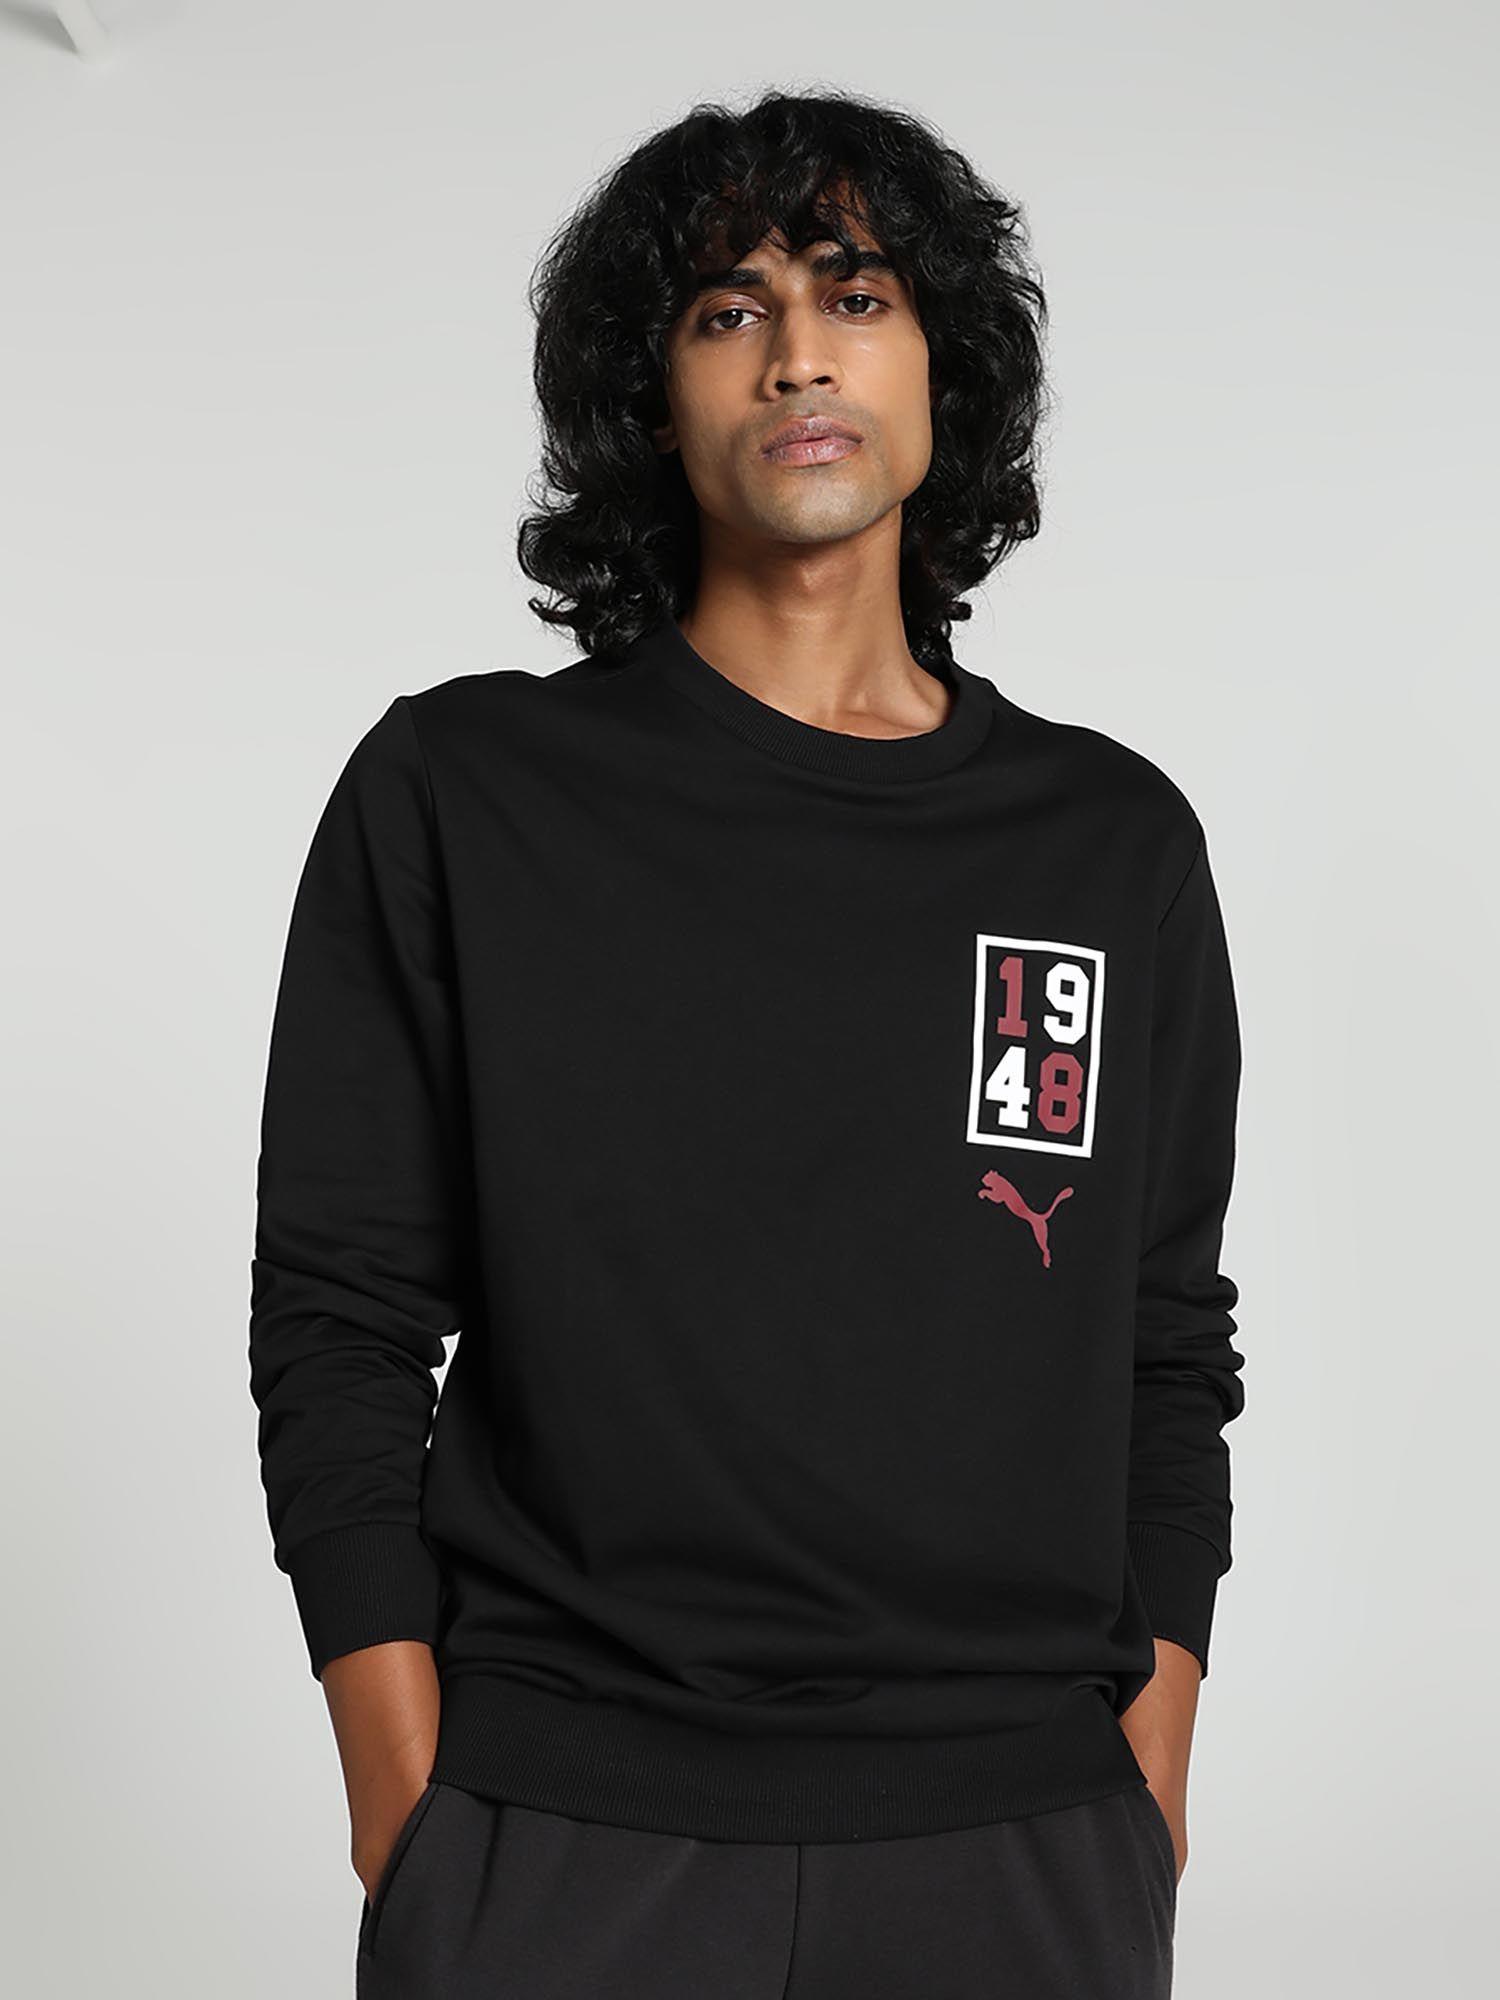 graphic-crew-men-black-sweatshirt